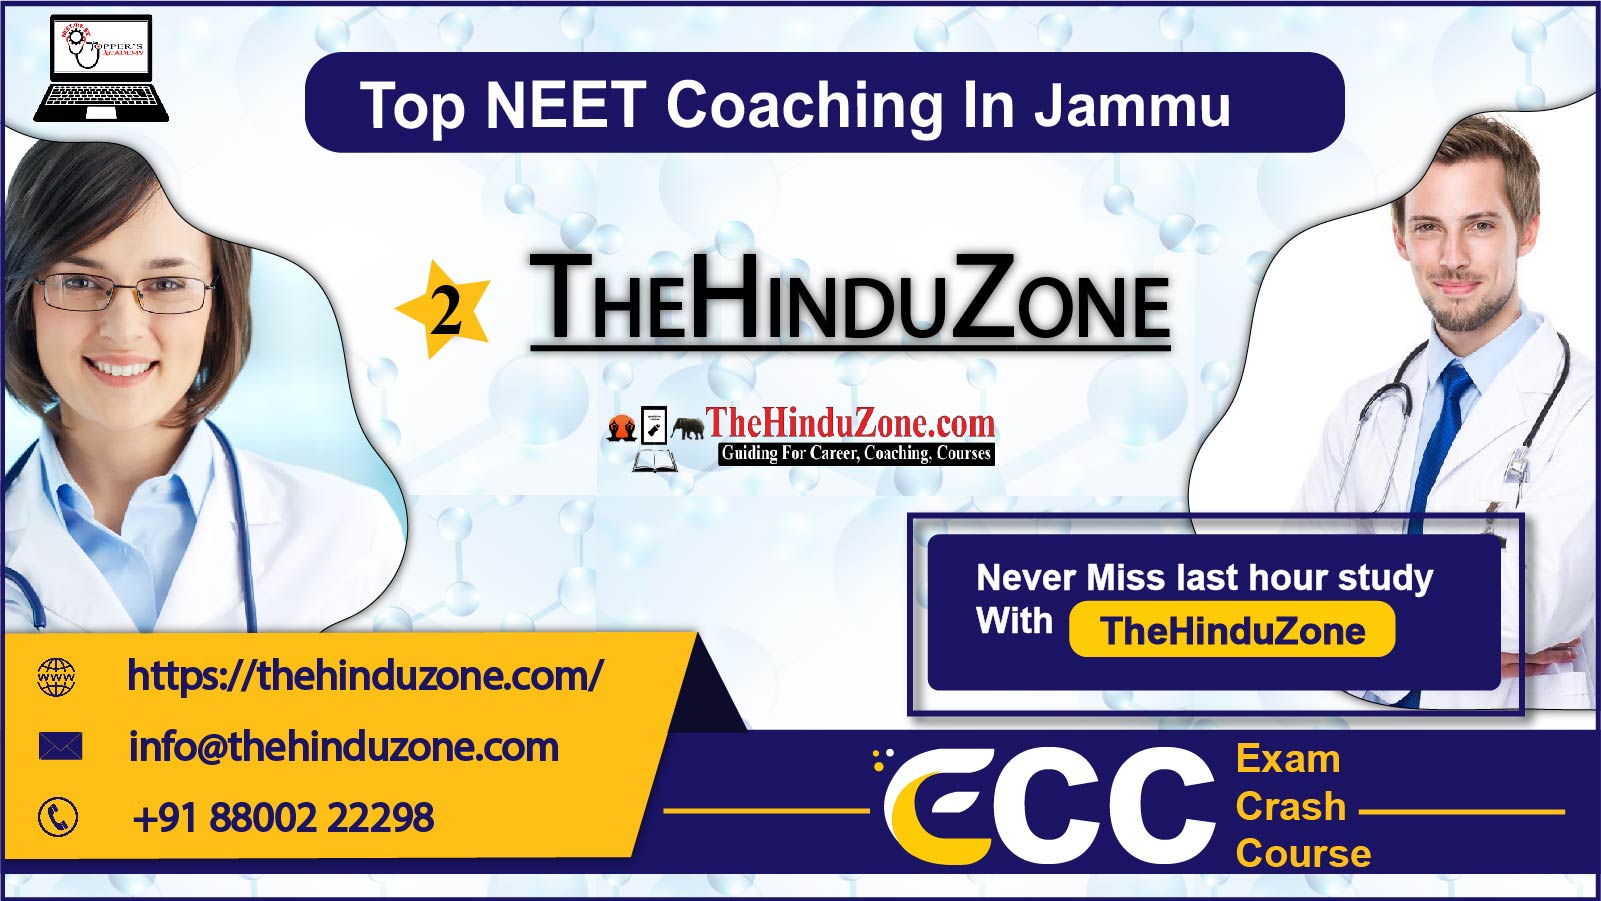 The Hinduzone NEET Coaching in Jammu